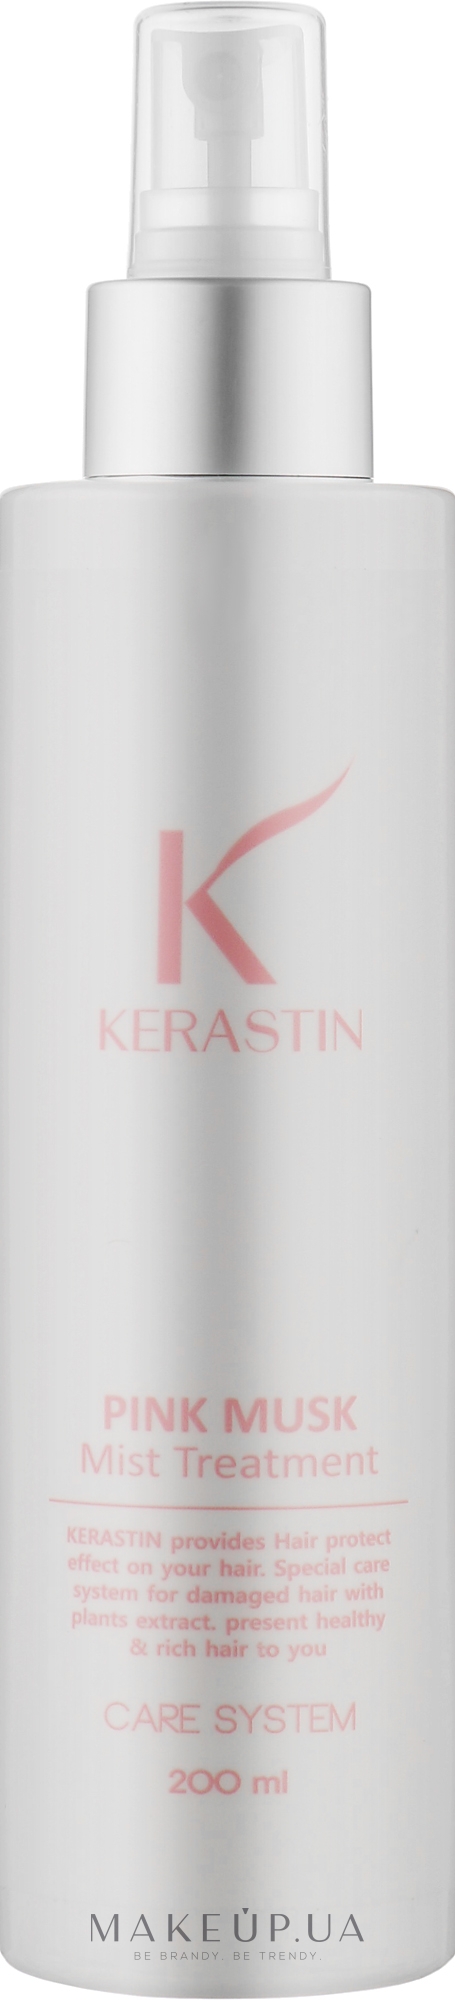 Відновлювальна маска-міст для волосся - PL Kerastin Pink Musk Mist Hair Treatment — фото 200ml